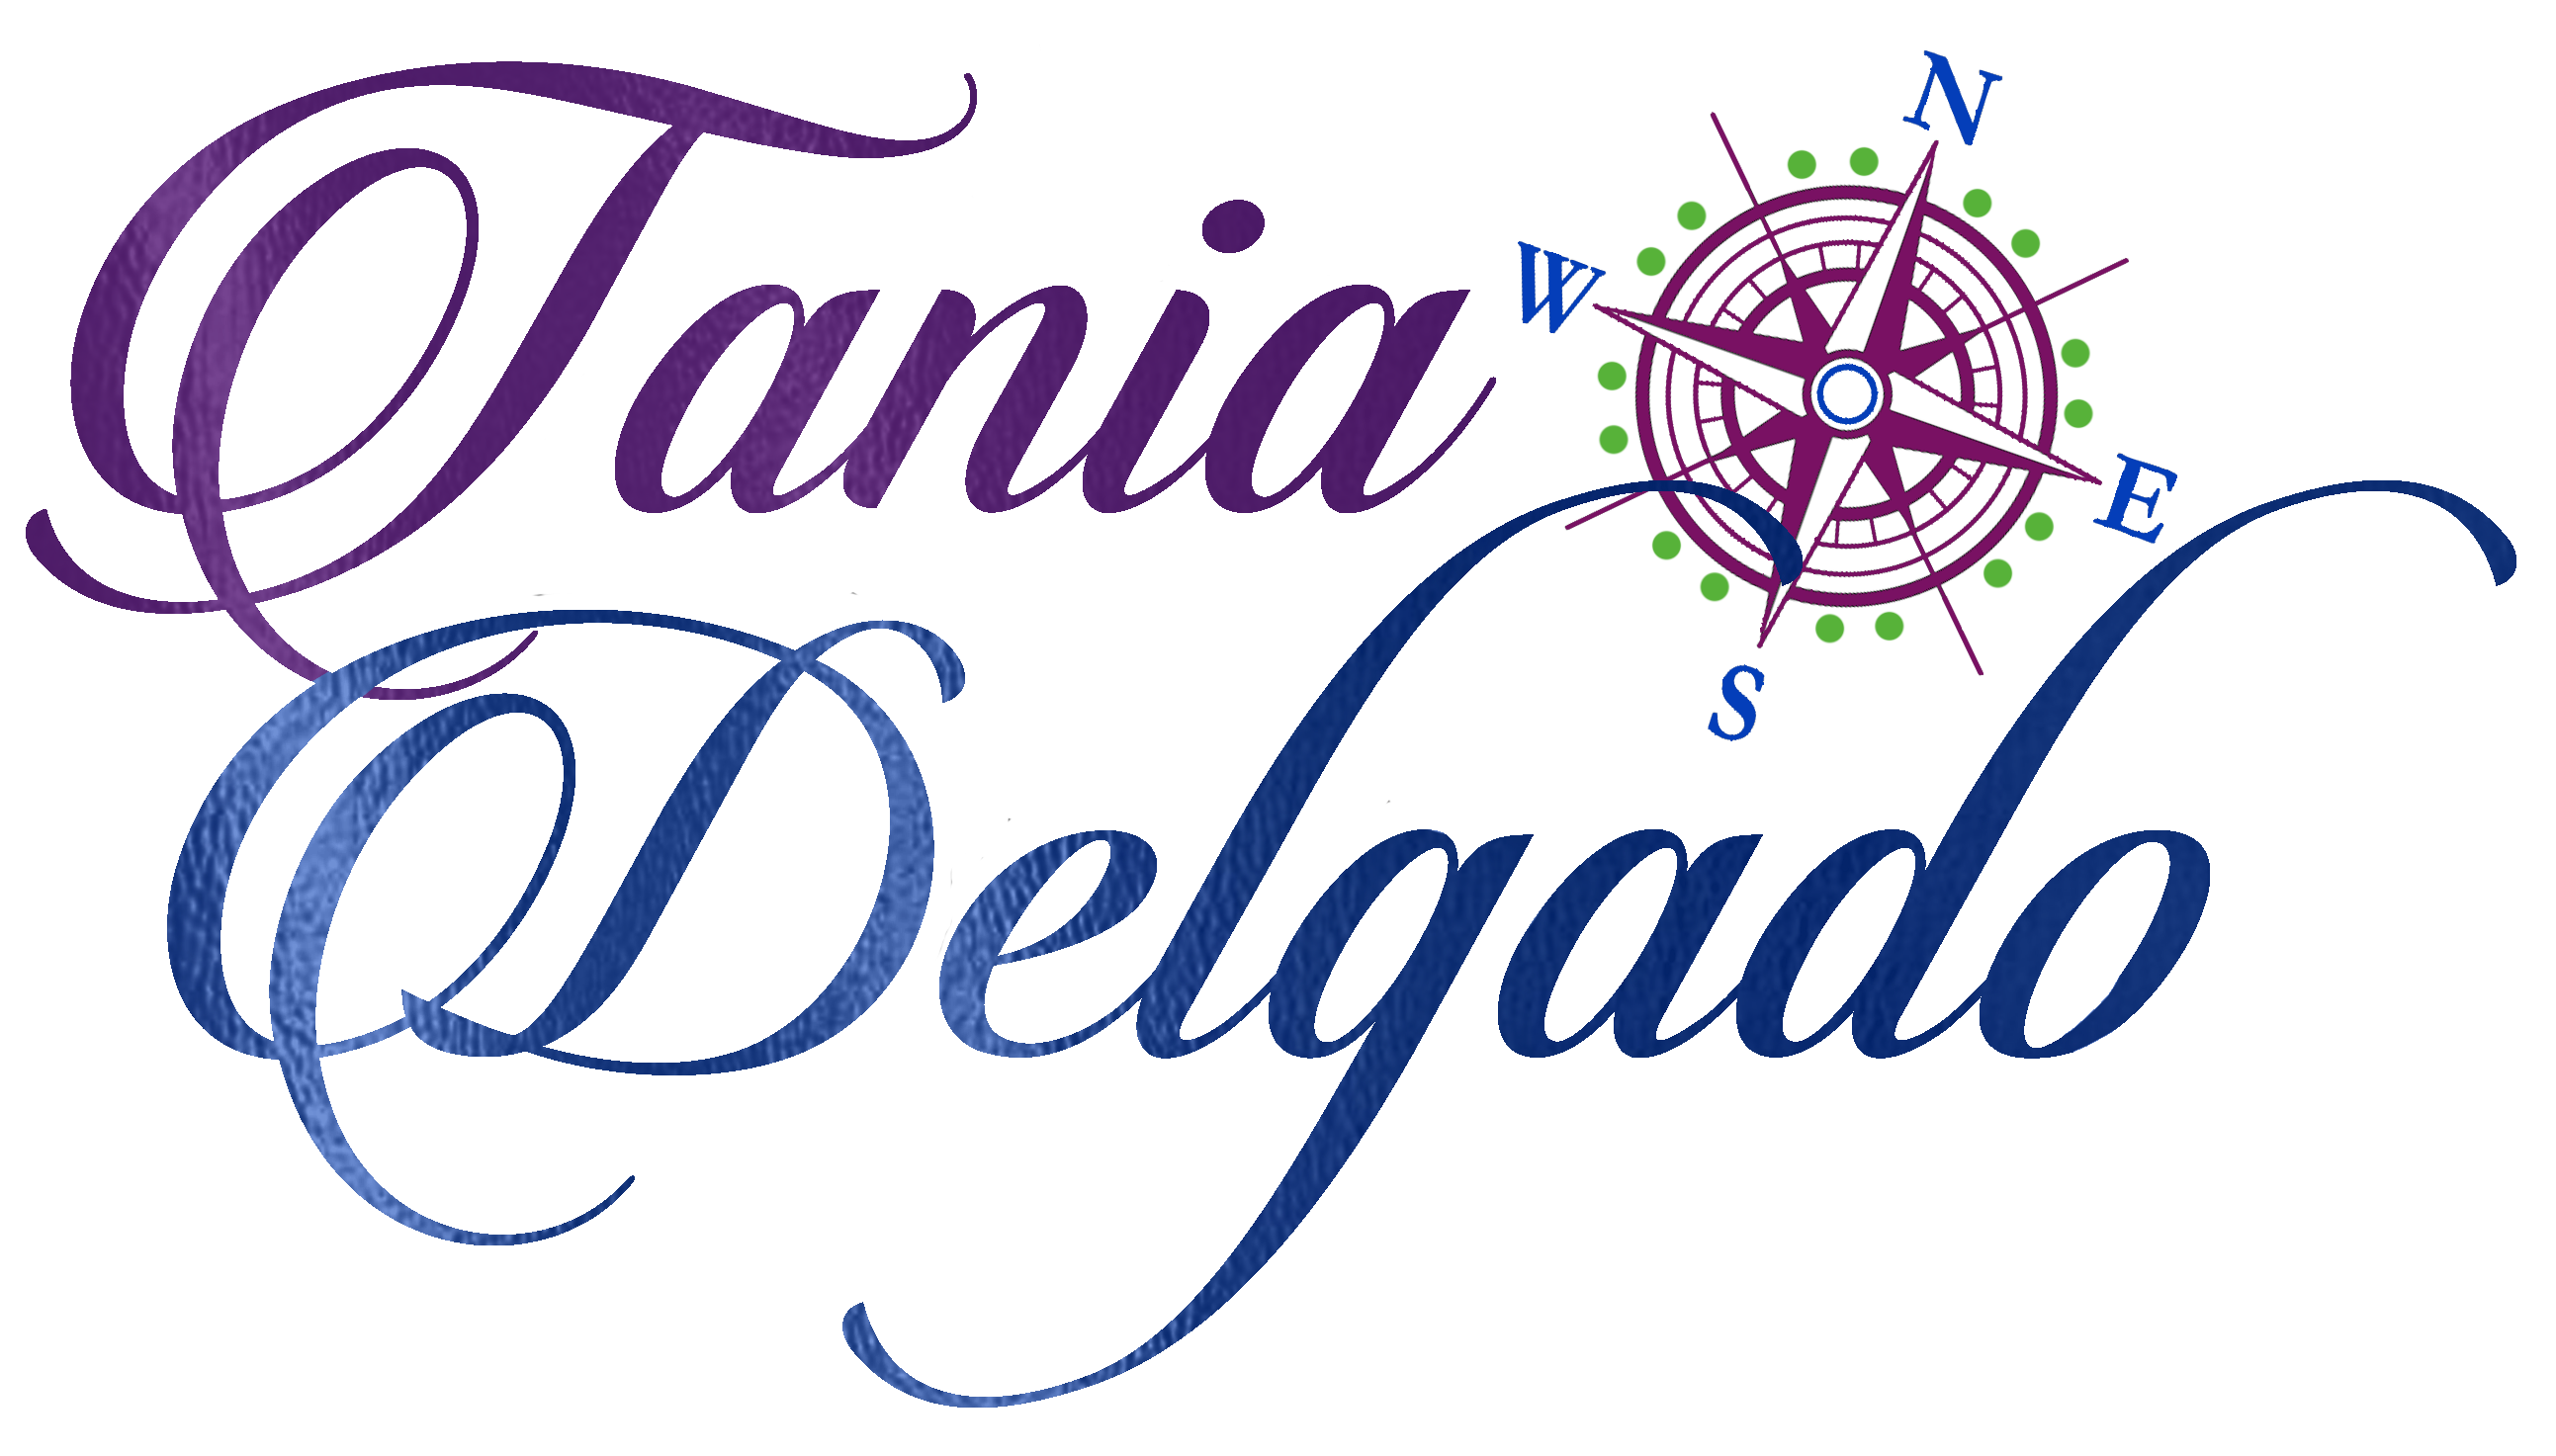 Tania Delgado